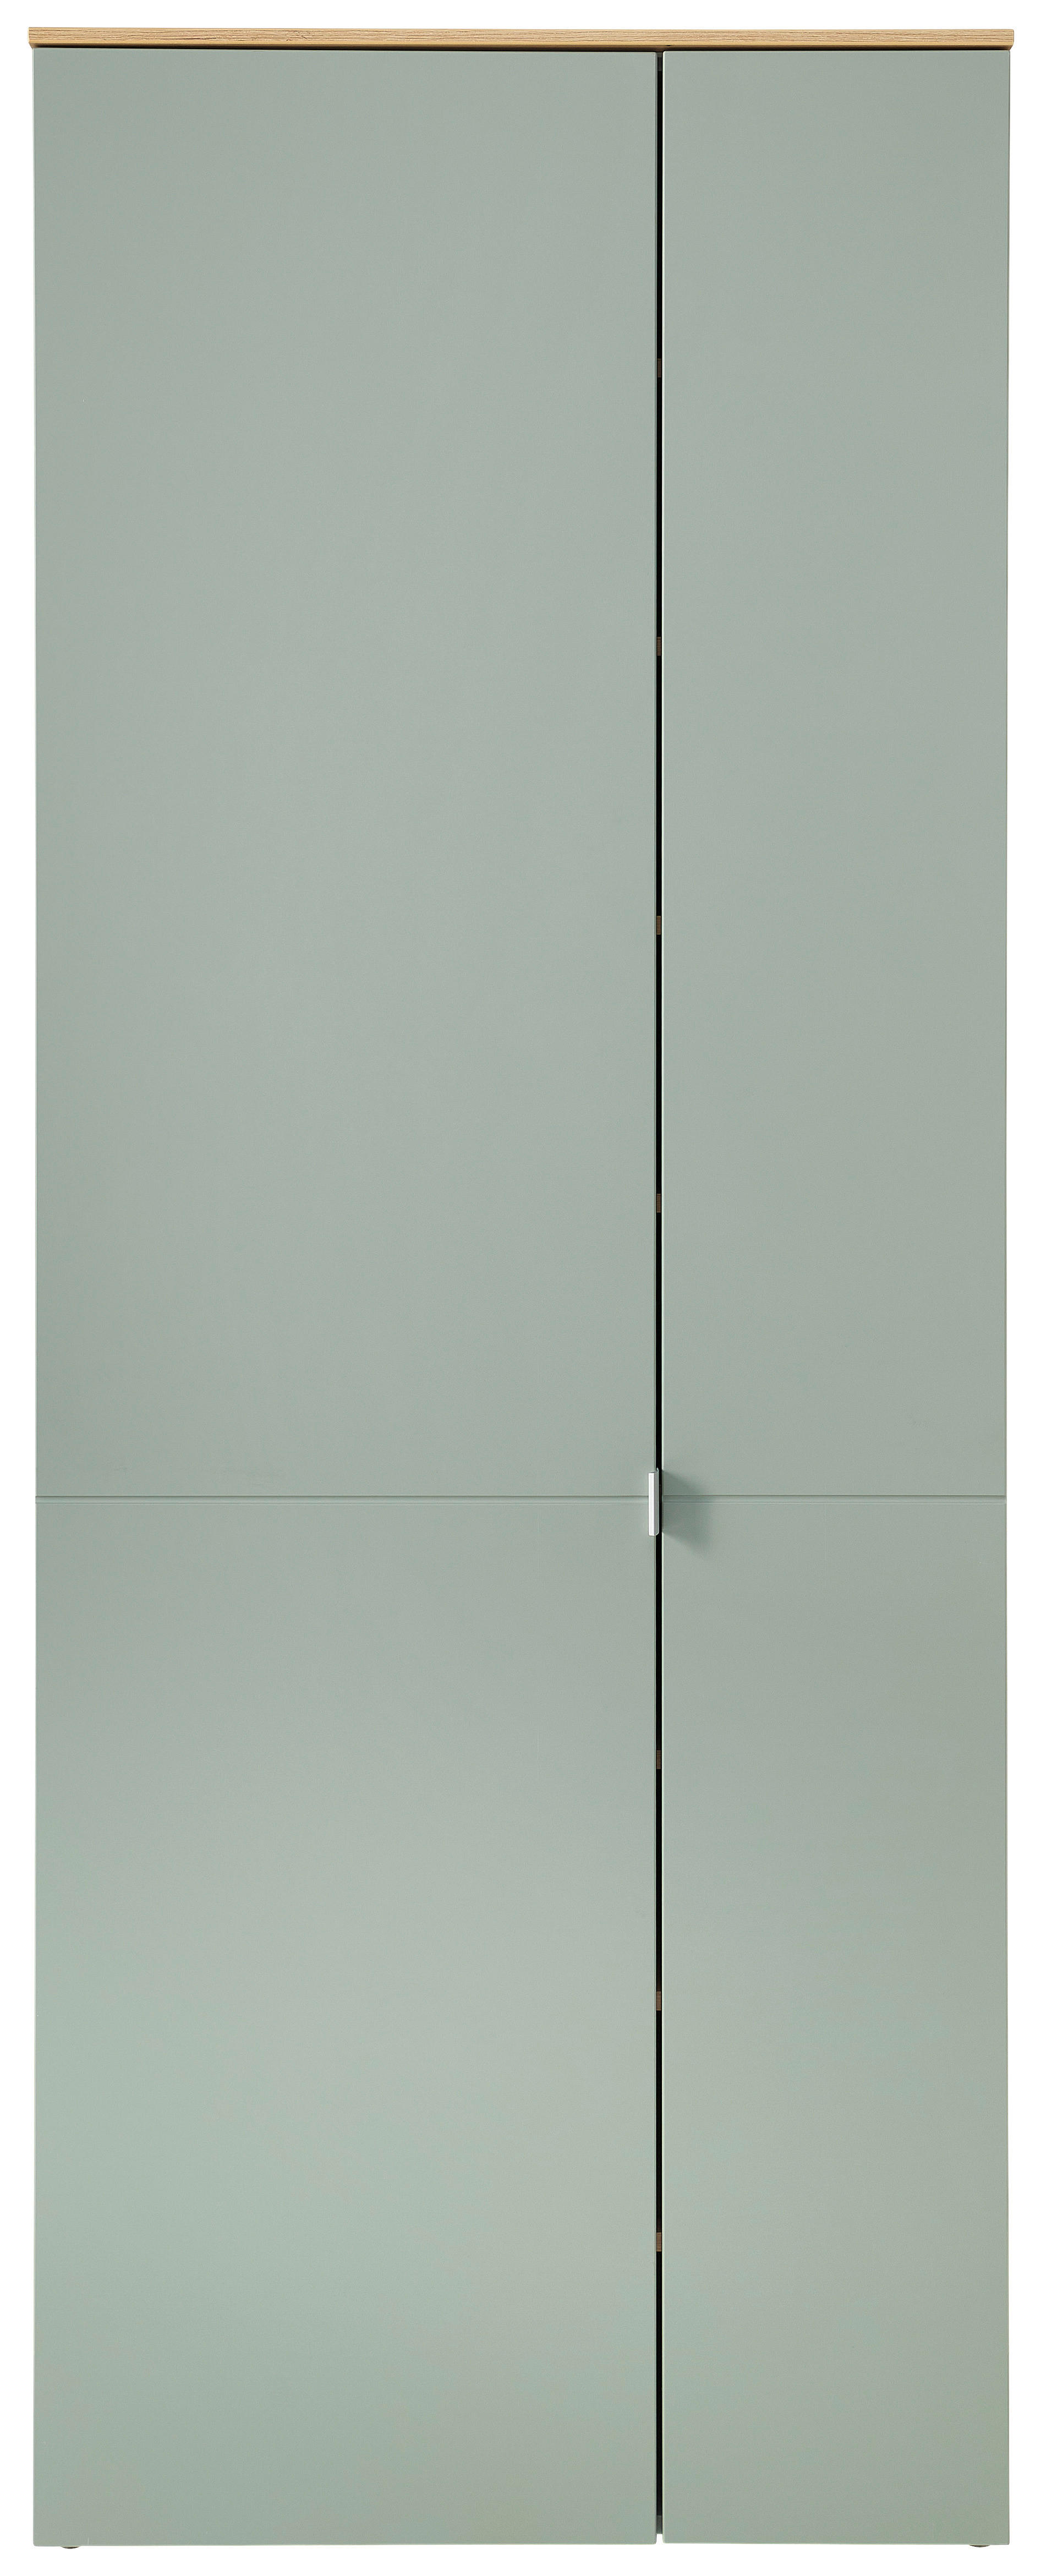 GARDEROBENSCHRANK 78/202/38 cm  - Salbeigrün/Silberfarben, Design, Holzwerkstoff/Kunststoff (78/202/38cm)